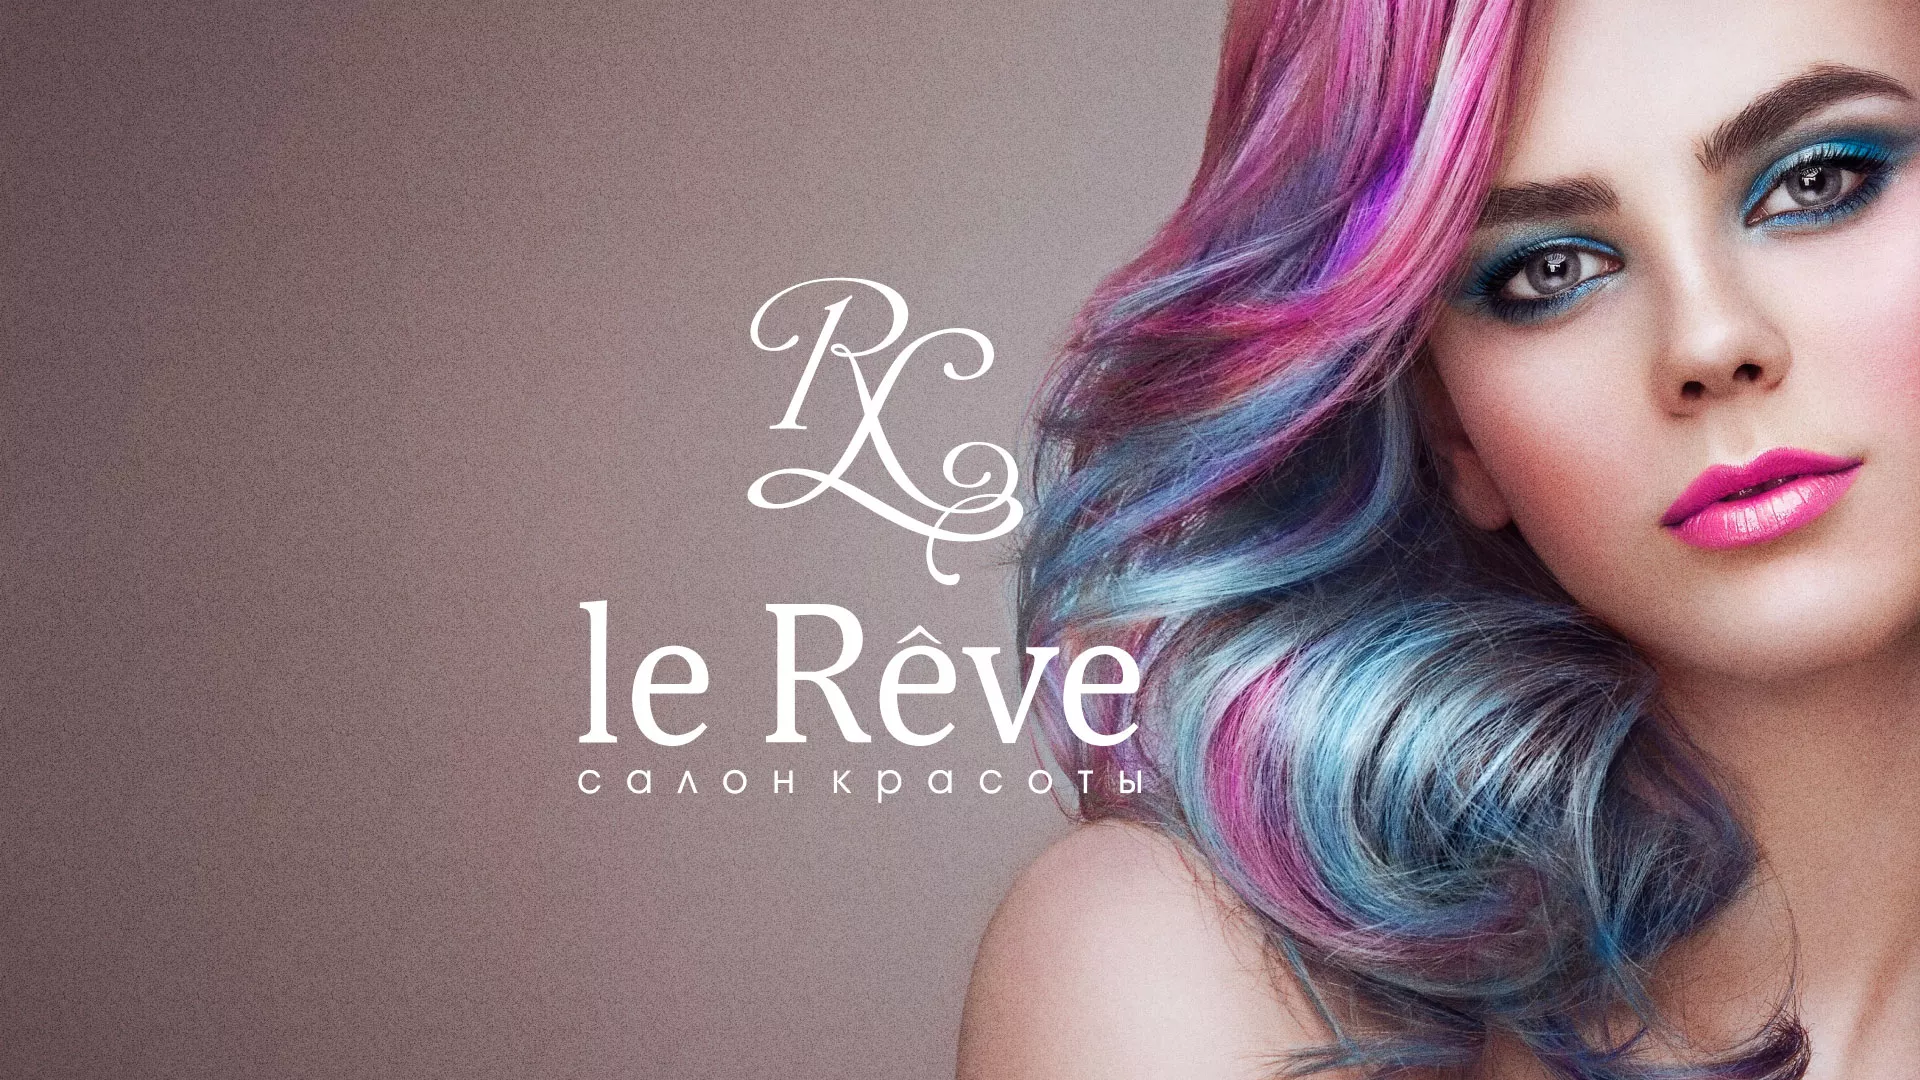 Создание сайта для салона красоты «Le Reve» в Анапе